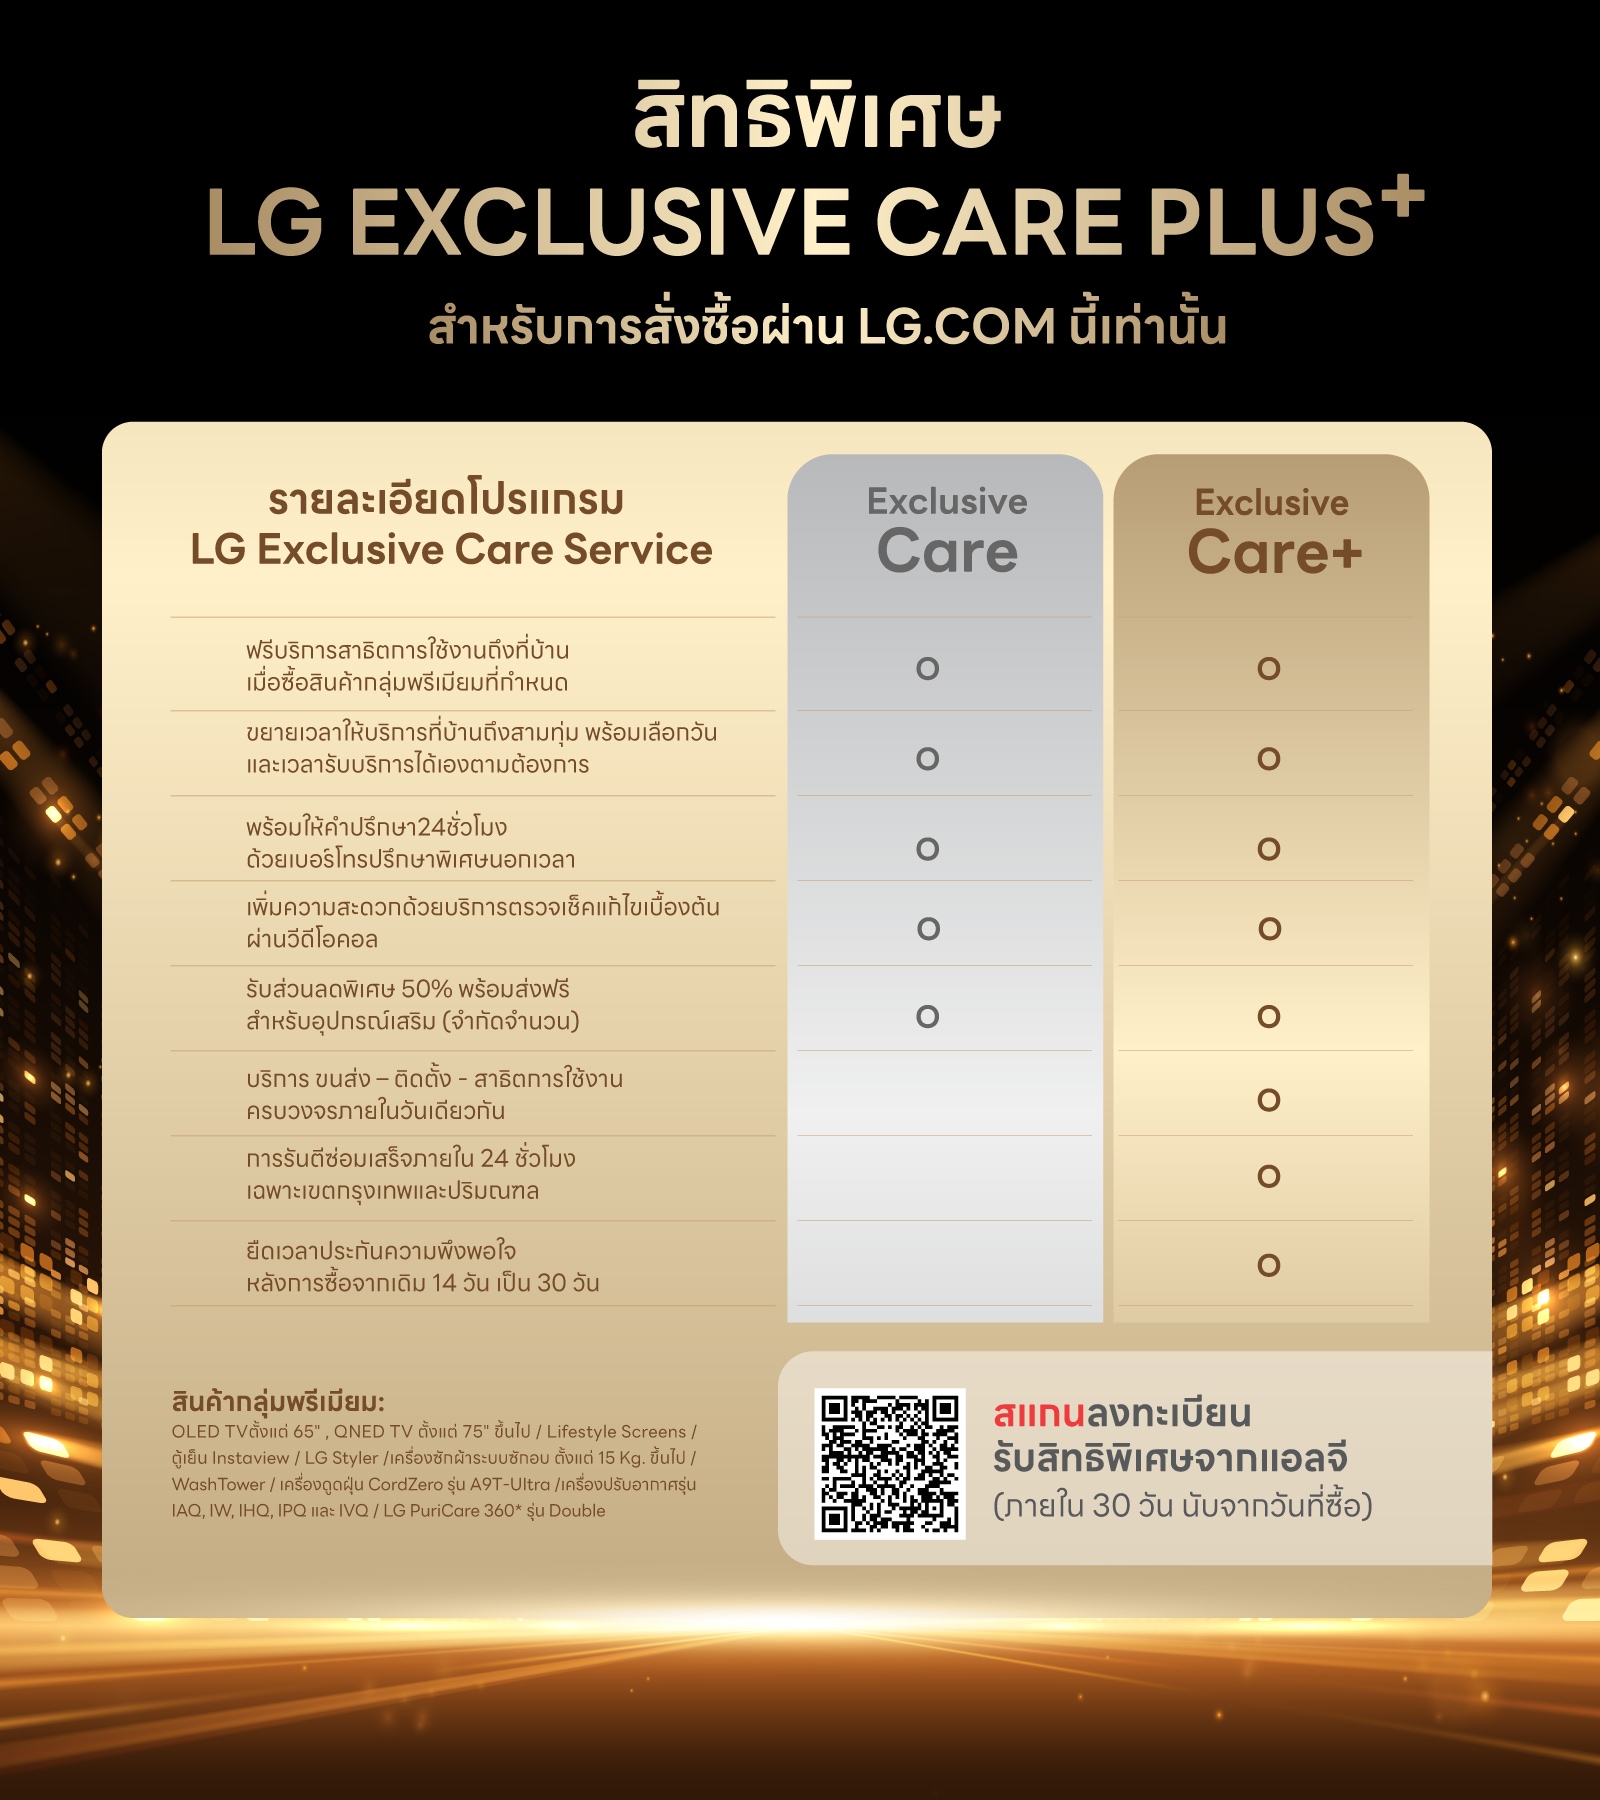 LG Exclusive Care Plus⁺